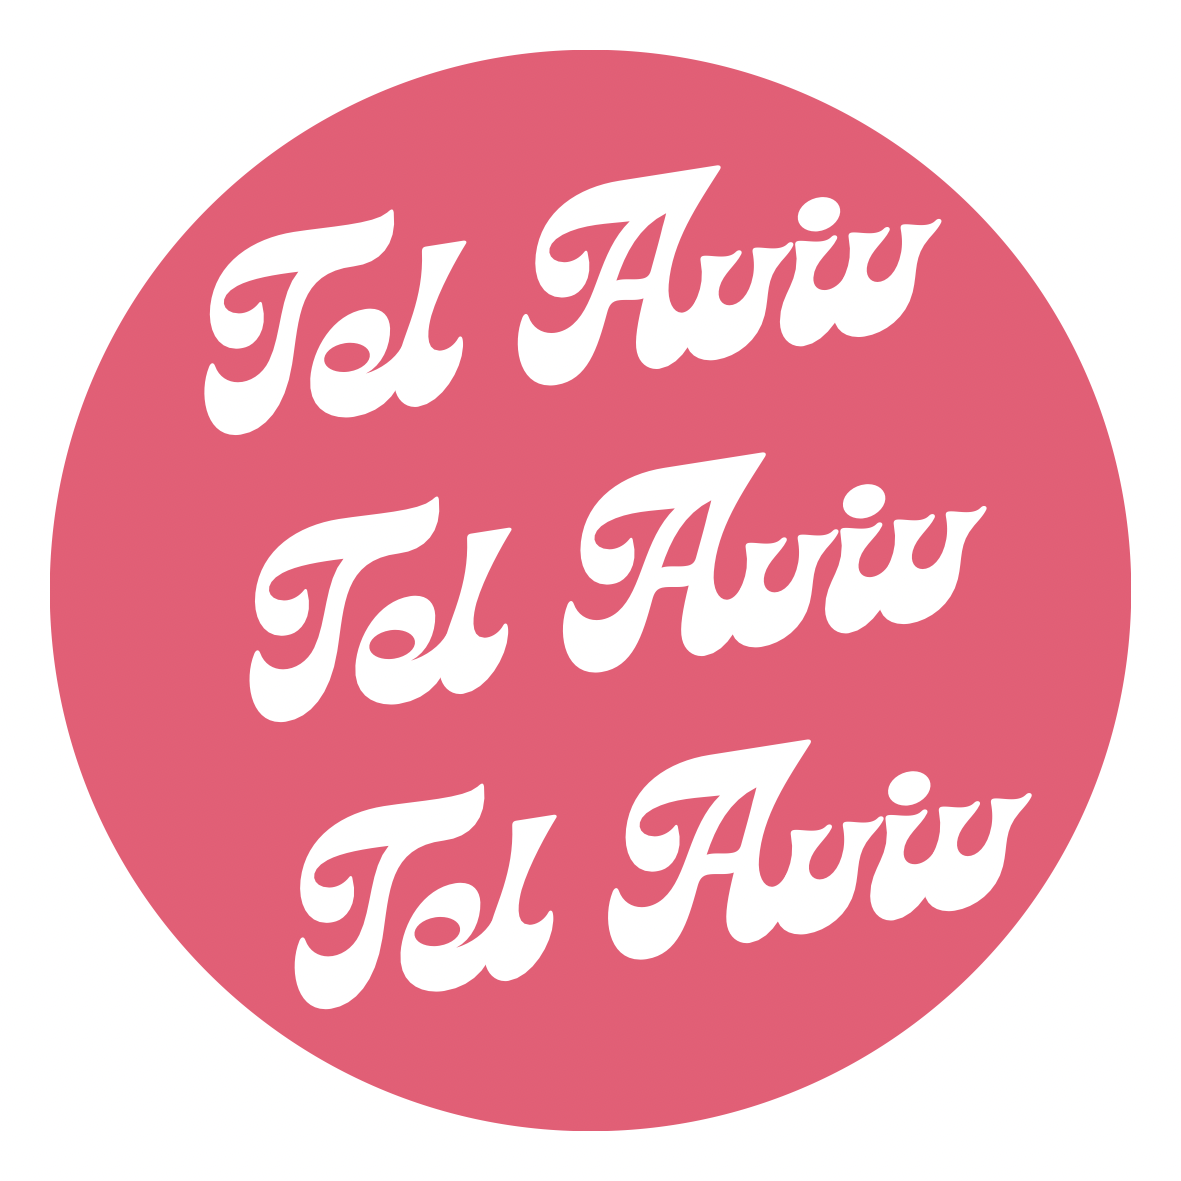 Azhia's Tel Aviv Sticker Set